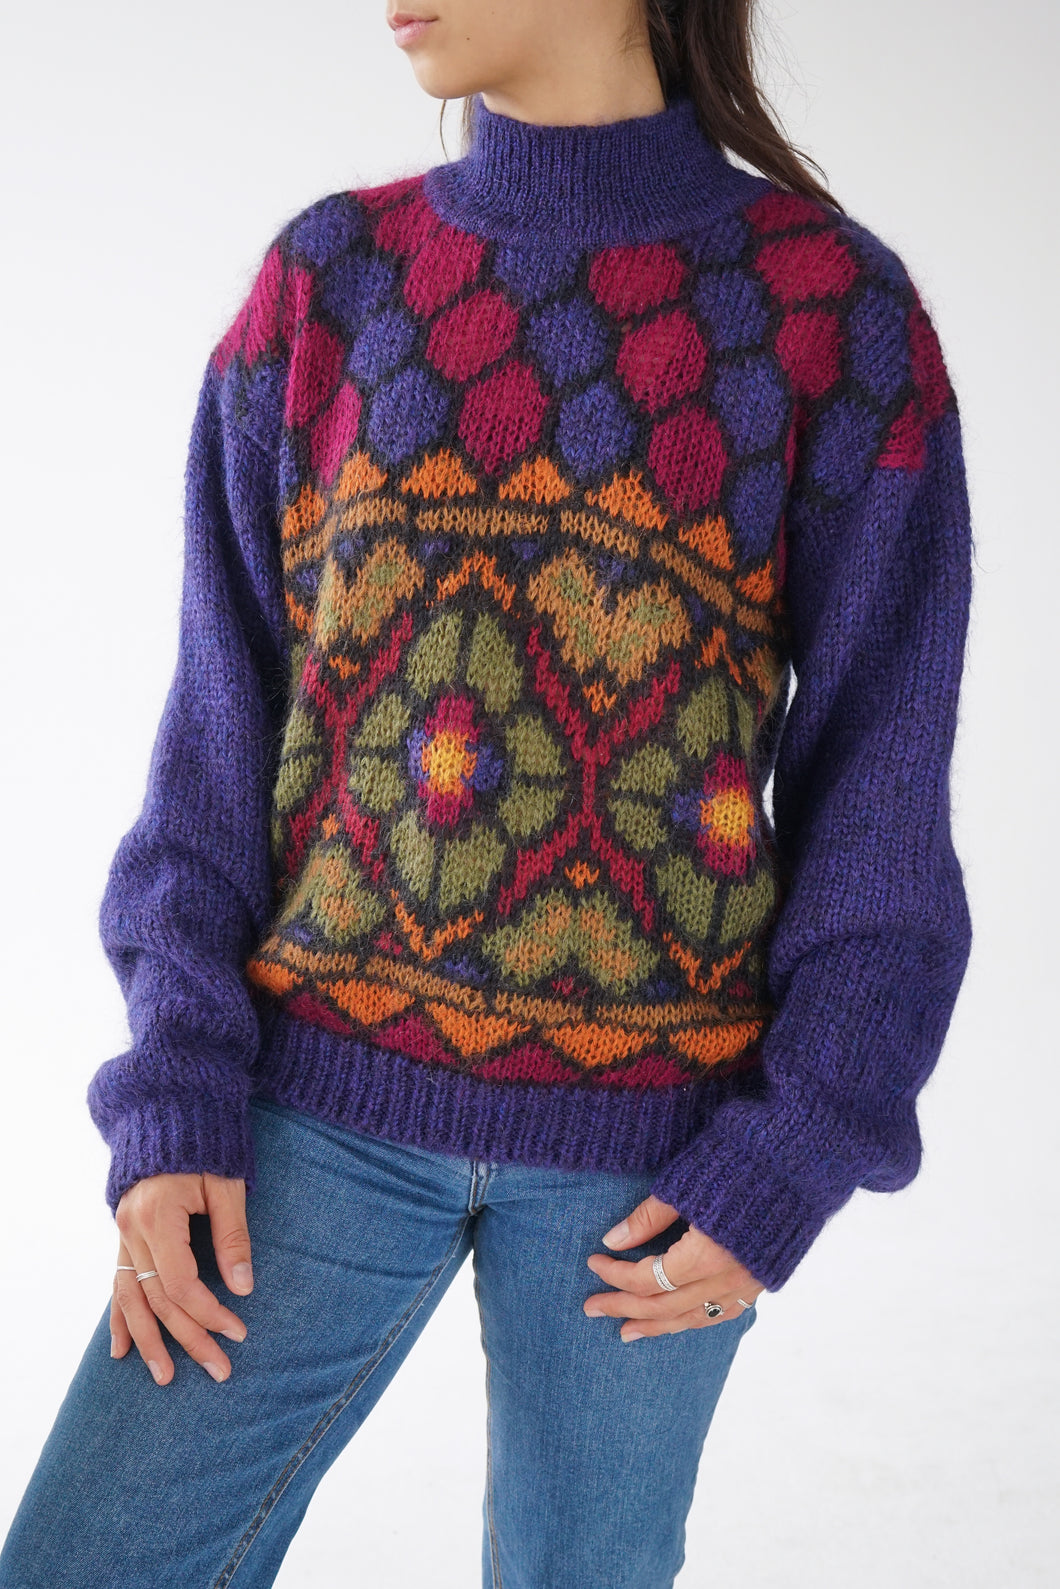 Chandail tricot en mohair avec motifs unisex taille M